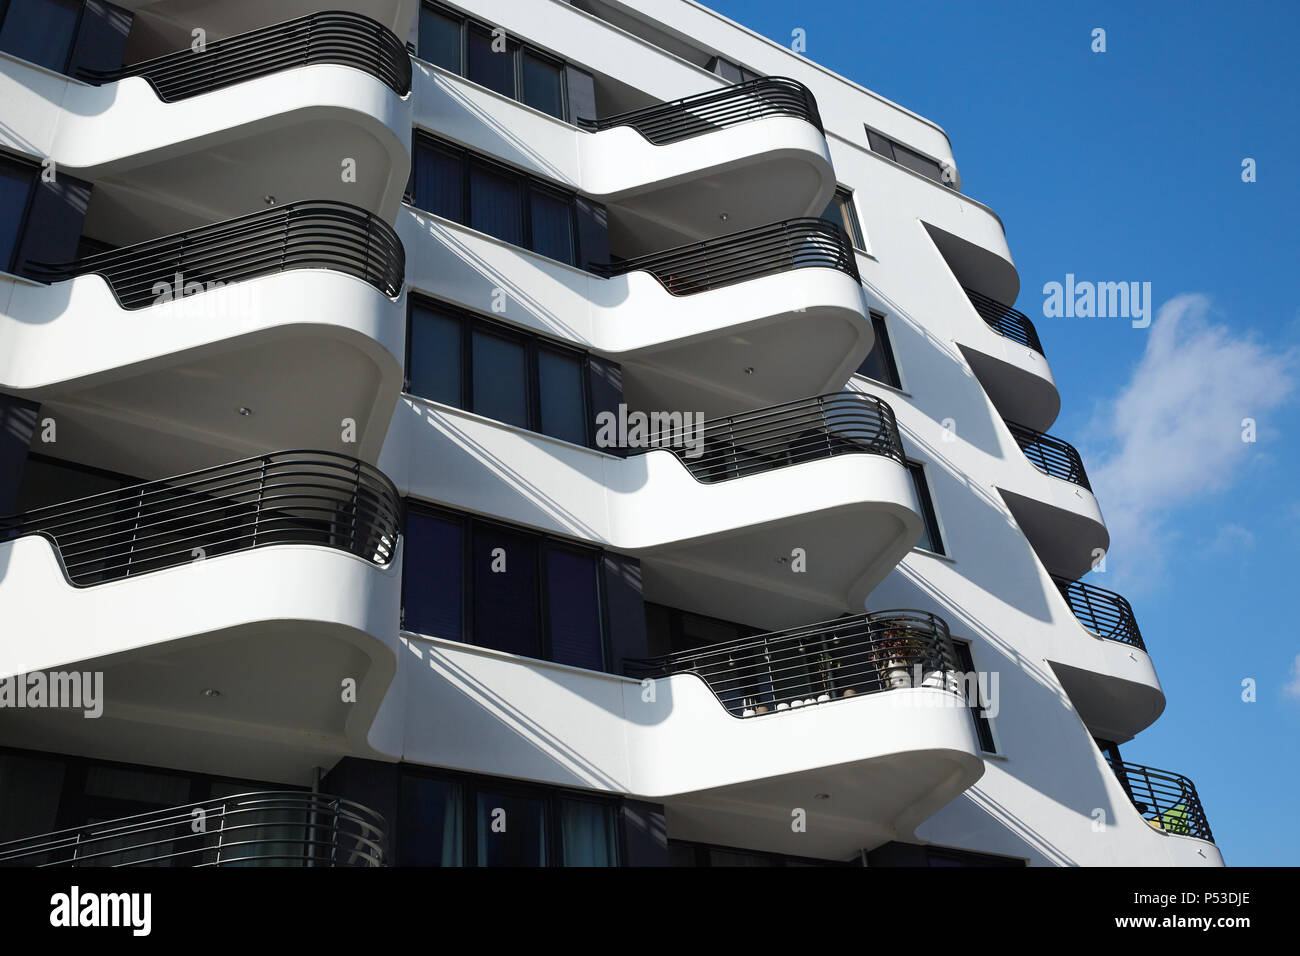 Berlino, Germania - Dettaglio della facciata di un edificio residenziale con avant-garde architettura a Berlino-Friedrichshain. Foto Stock